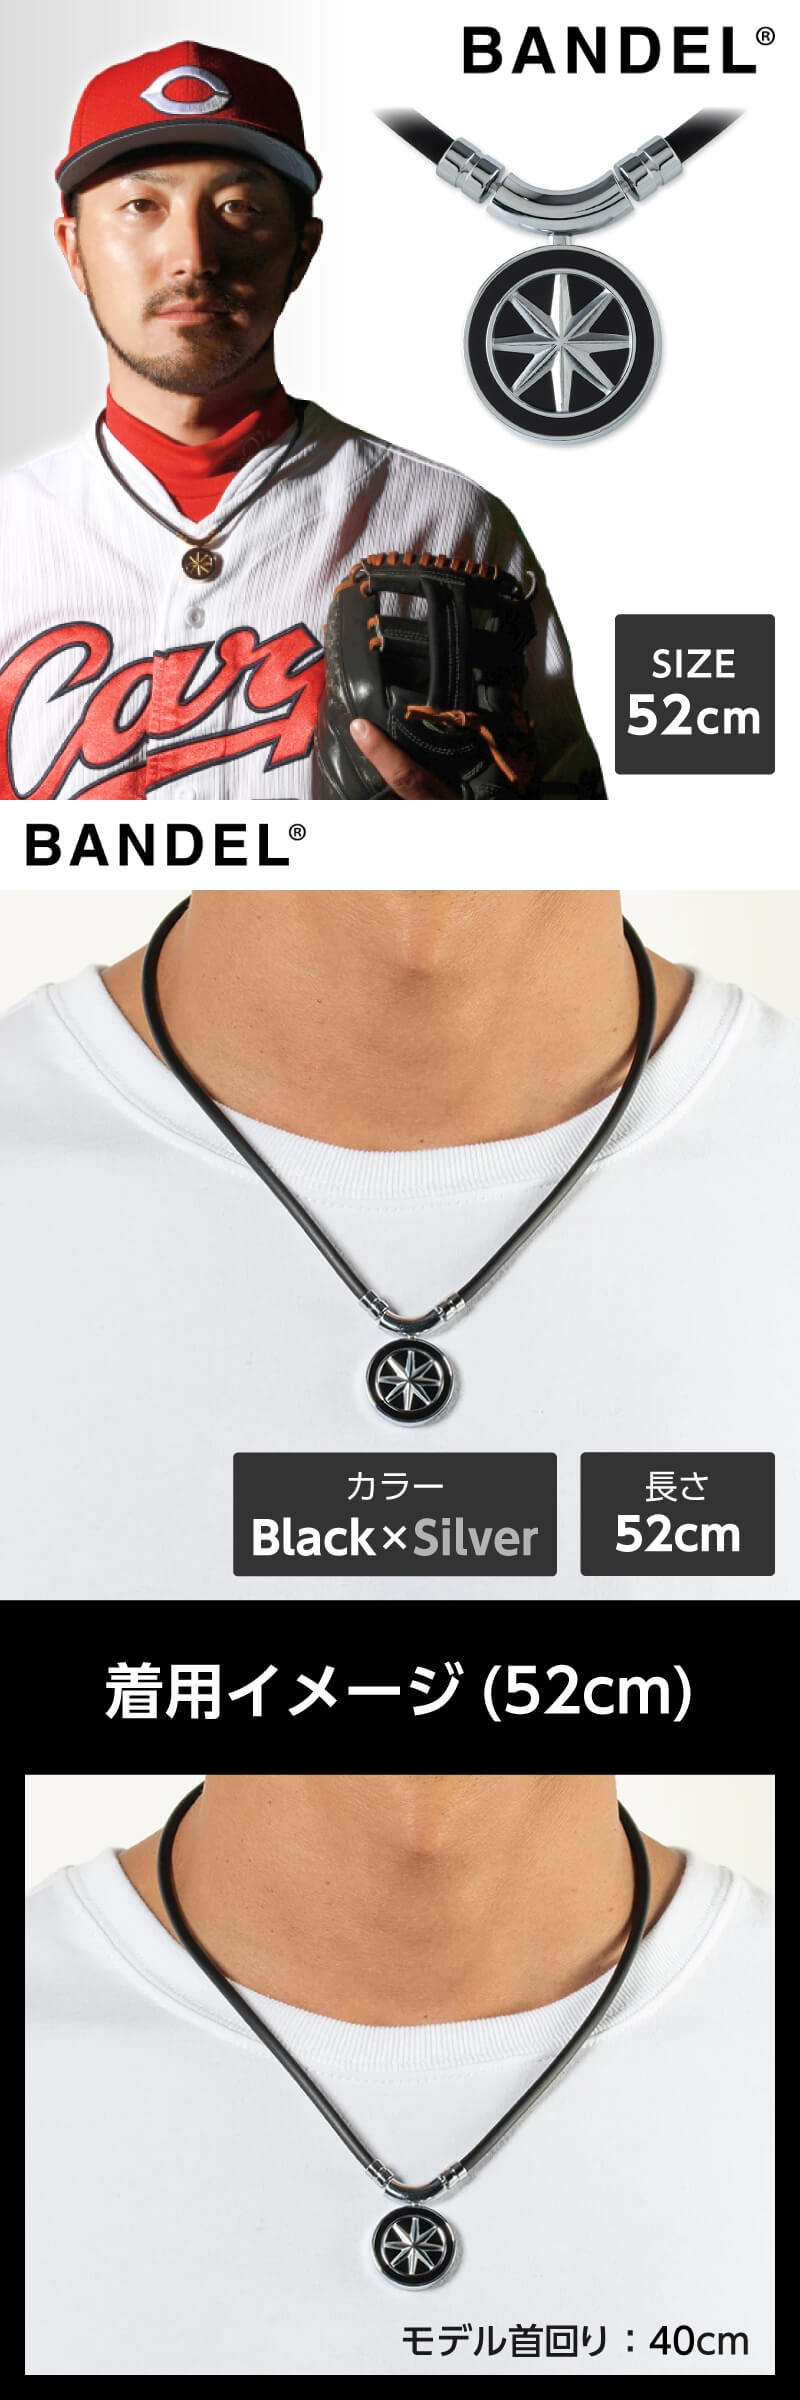 バンデル BANDEL Earth Black×Silver 52cm 448309 磁気ネックレス おしゃれ 肩こり スポーツ ゴルフ プレゼント  敬老の日